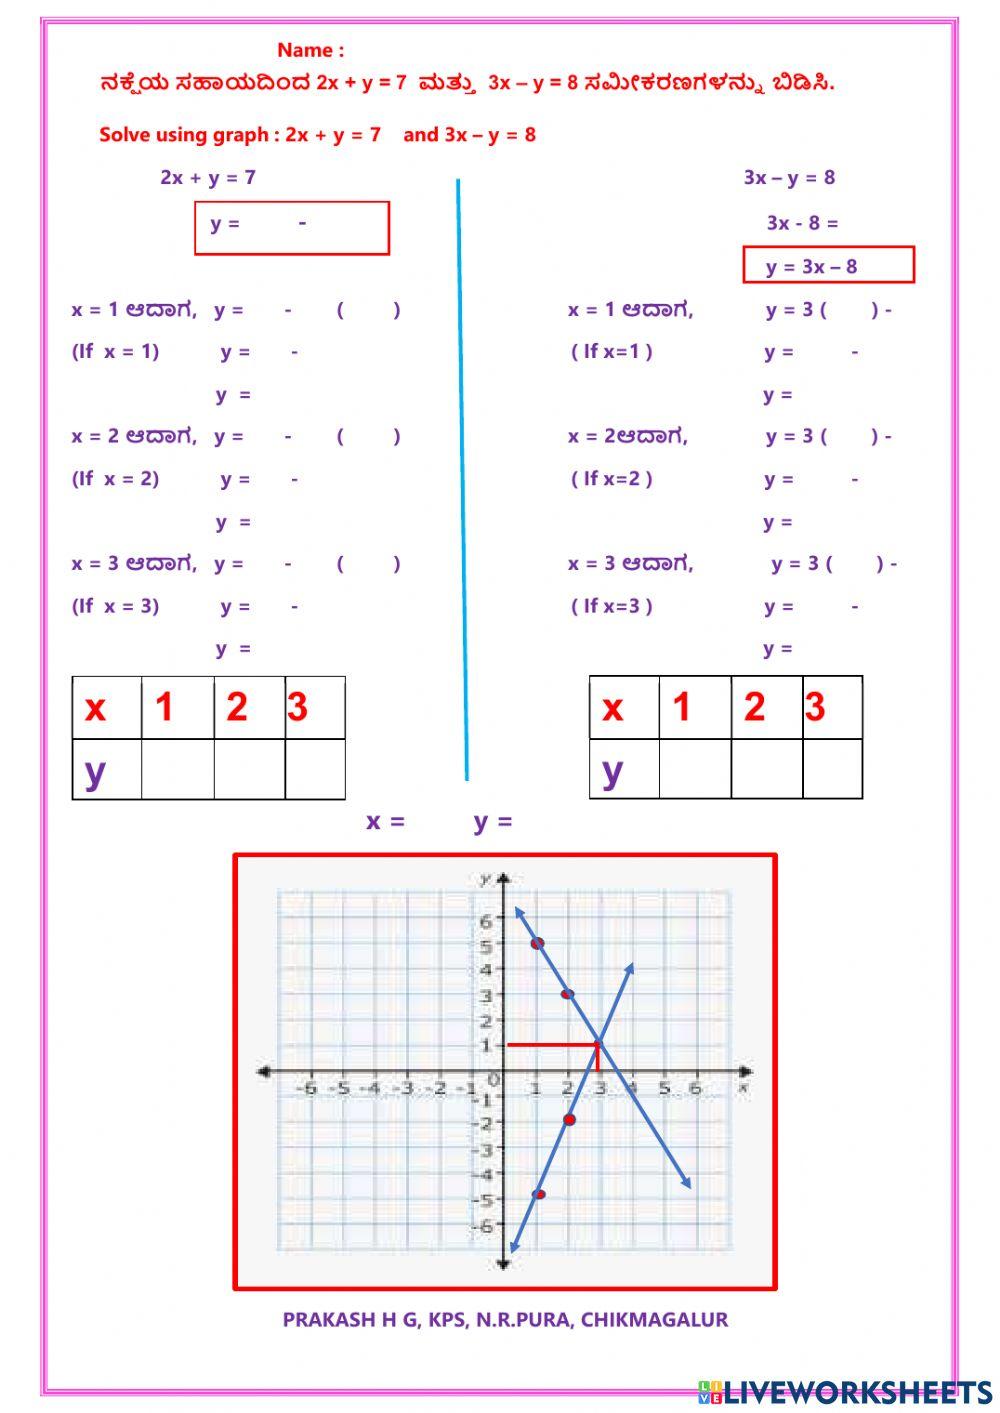 ನಕ್ಷೆಯ ಸಹಾಯದಿಂದ ಸಮೀಕರಣ ಬಿಡಿಸುವುದು (Solving equations using graph)- PRAKASH HG, N.R.PURA